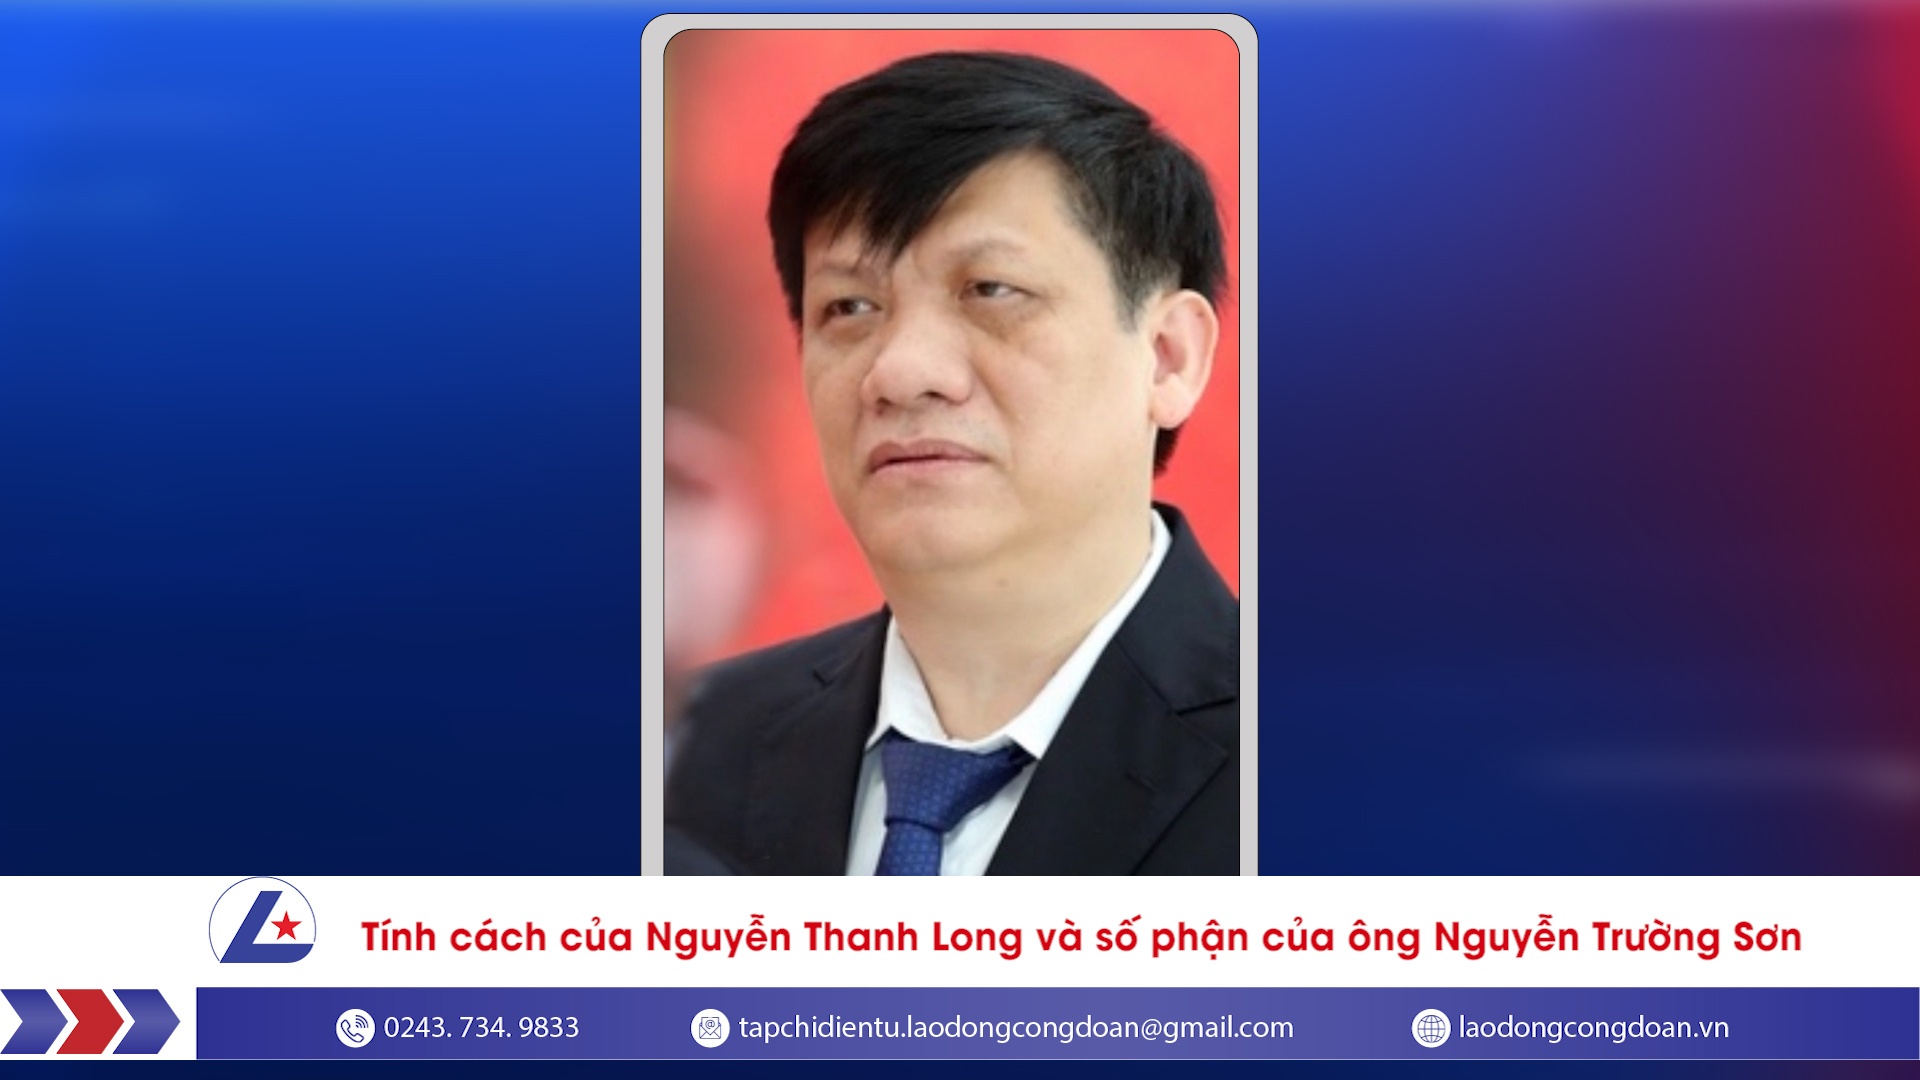 Tính cách của Nguyễn Thanh Long và số phận của ông Nguyễn Trường Sơn